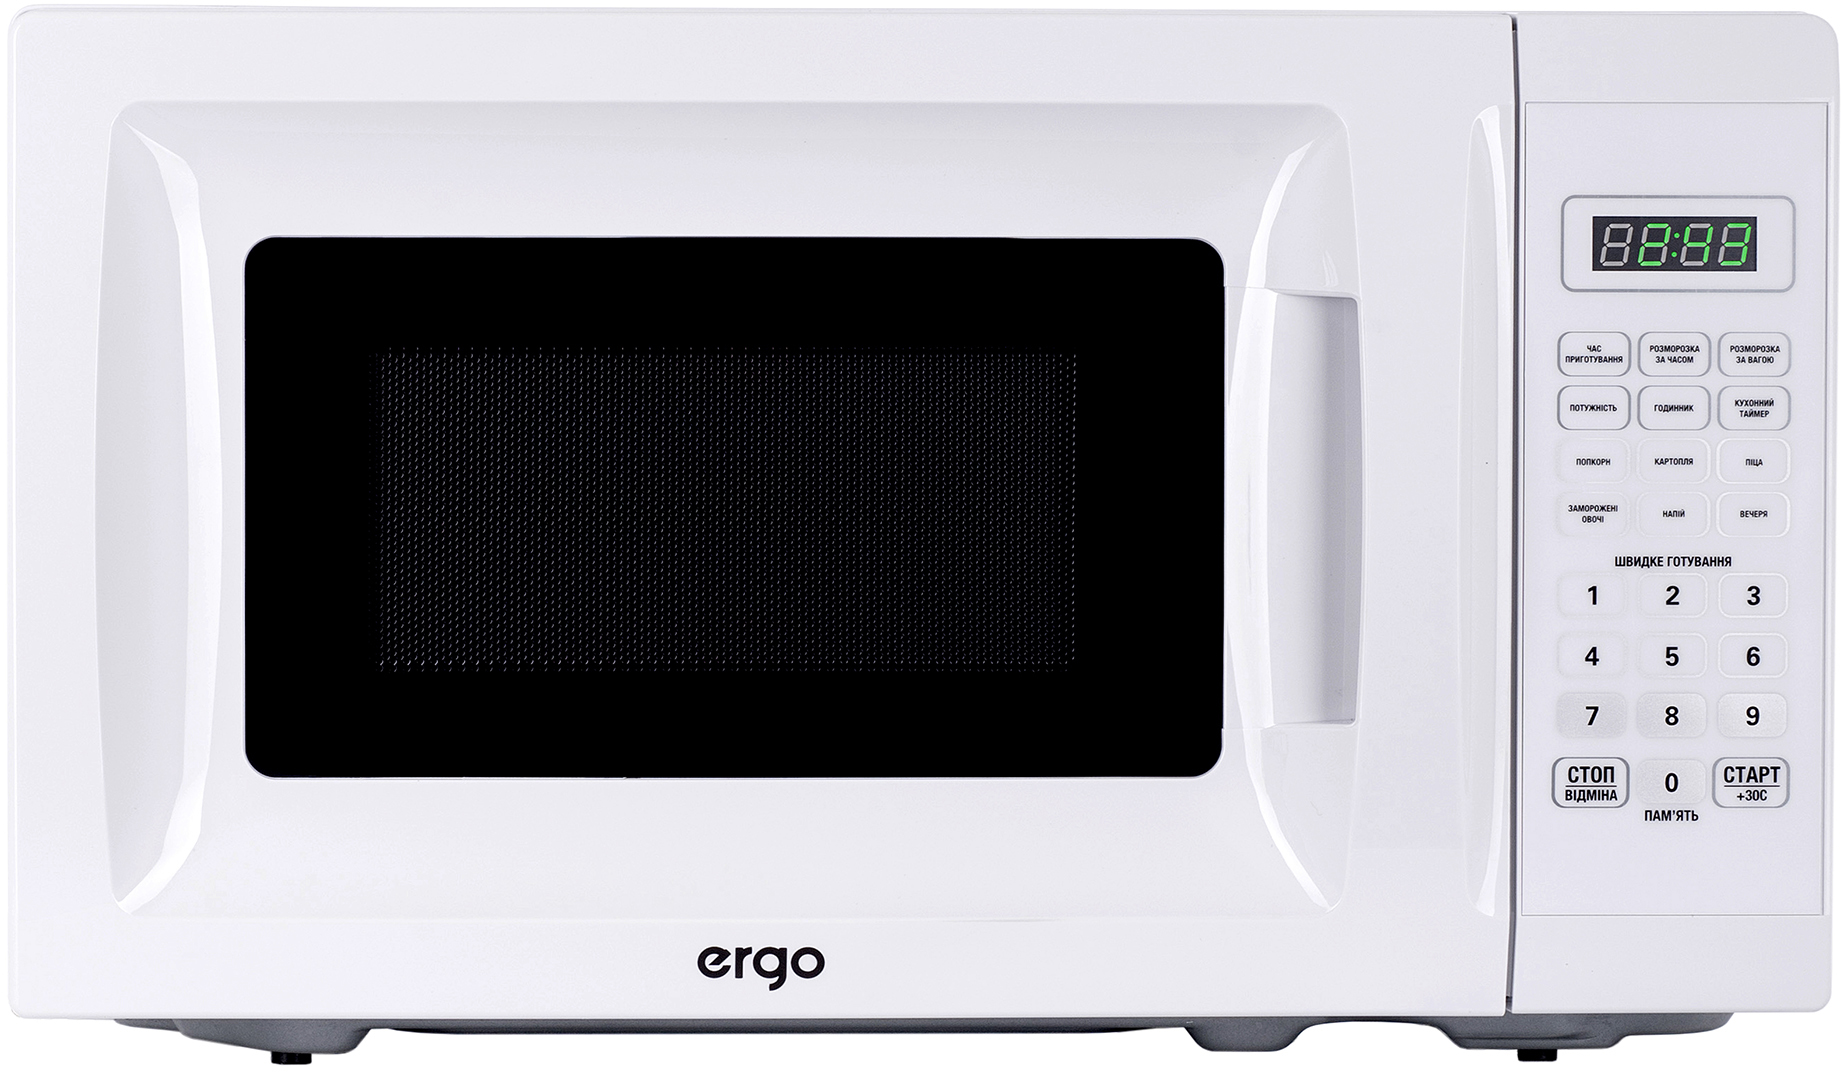 Микроволновая печь Ergo EM-2005 в интернет-магазине, главное фото